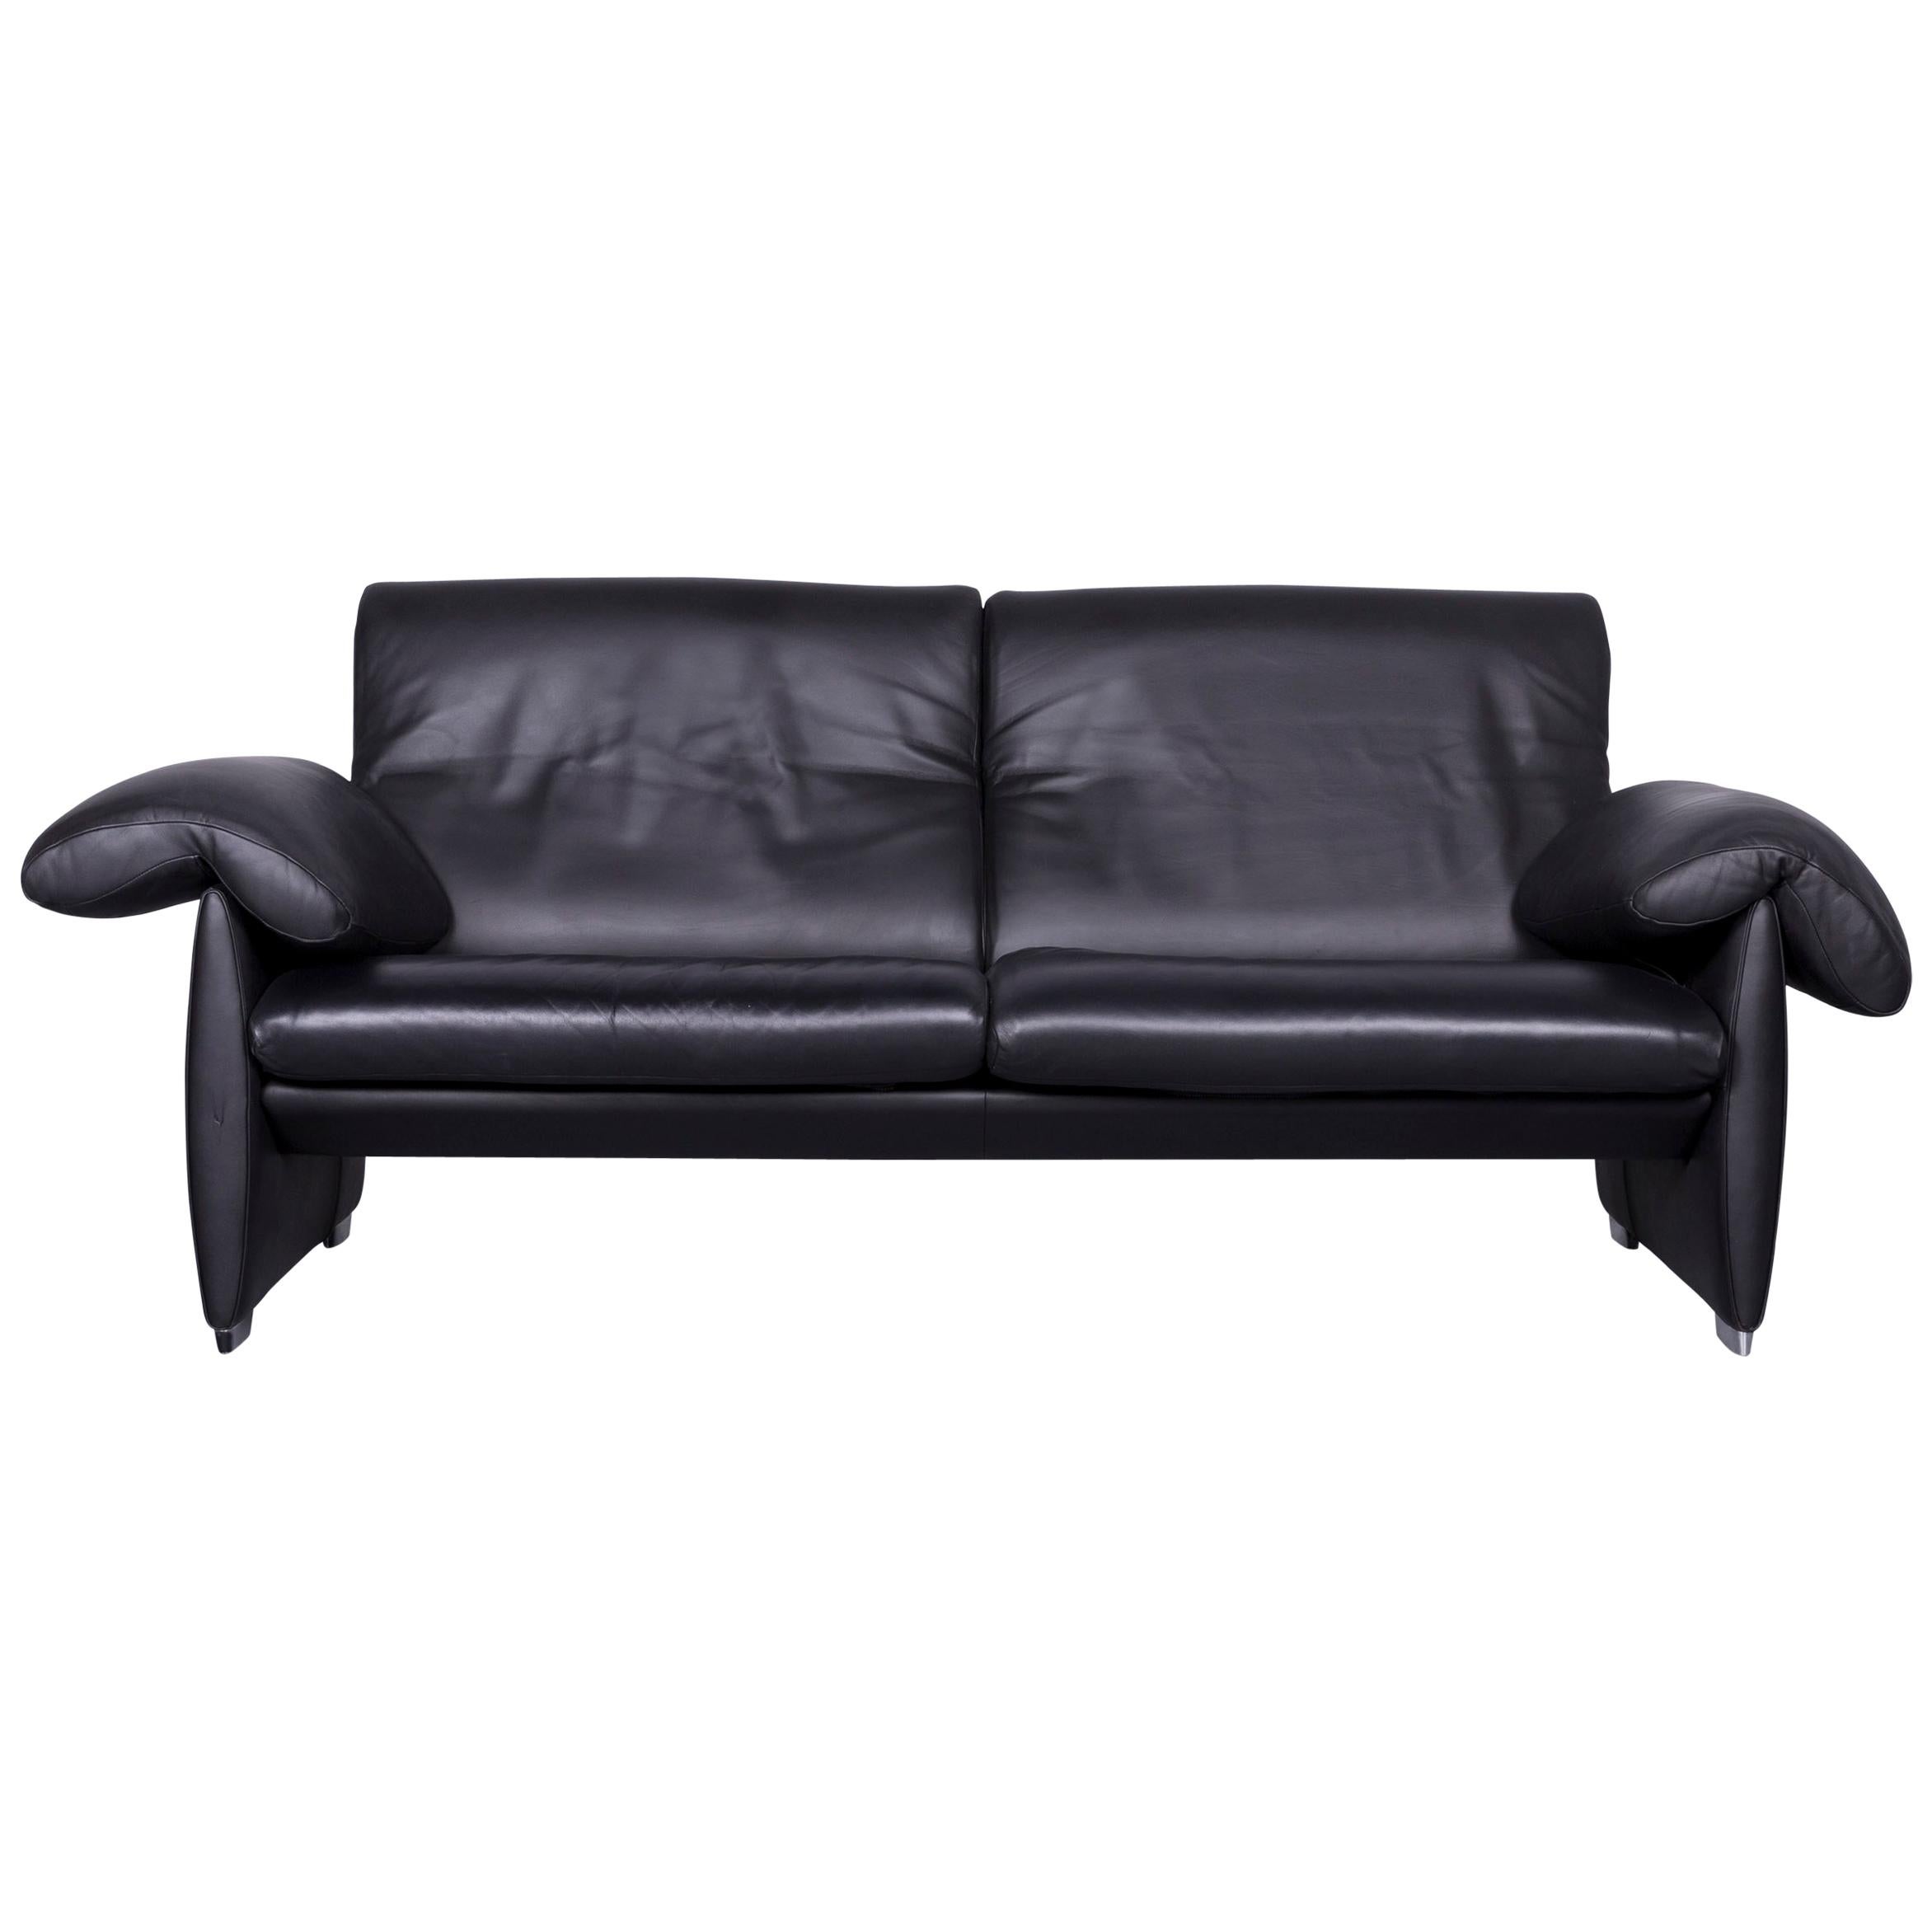 De Sede Ds 10 Designer Sofa Black Leather Three-Seat Couch